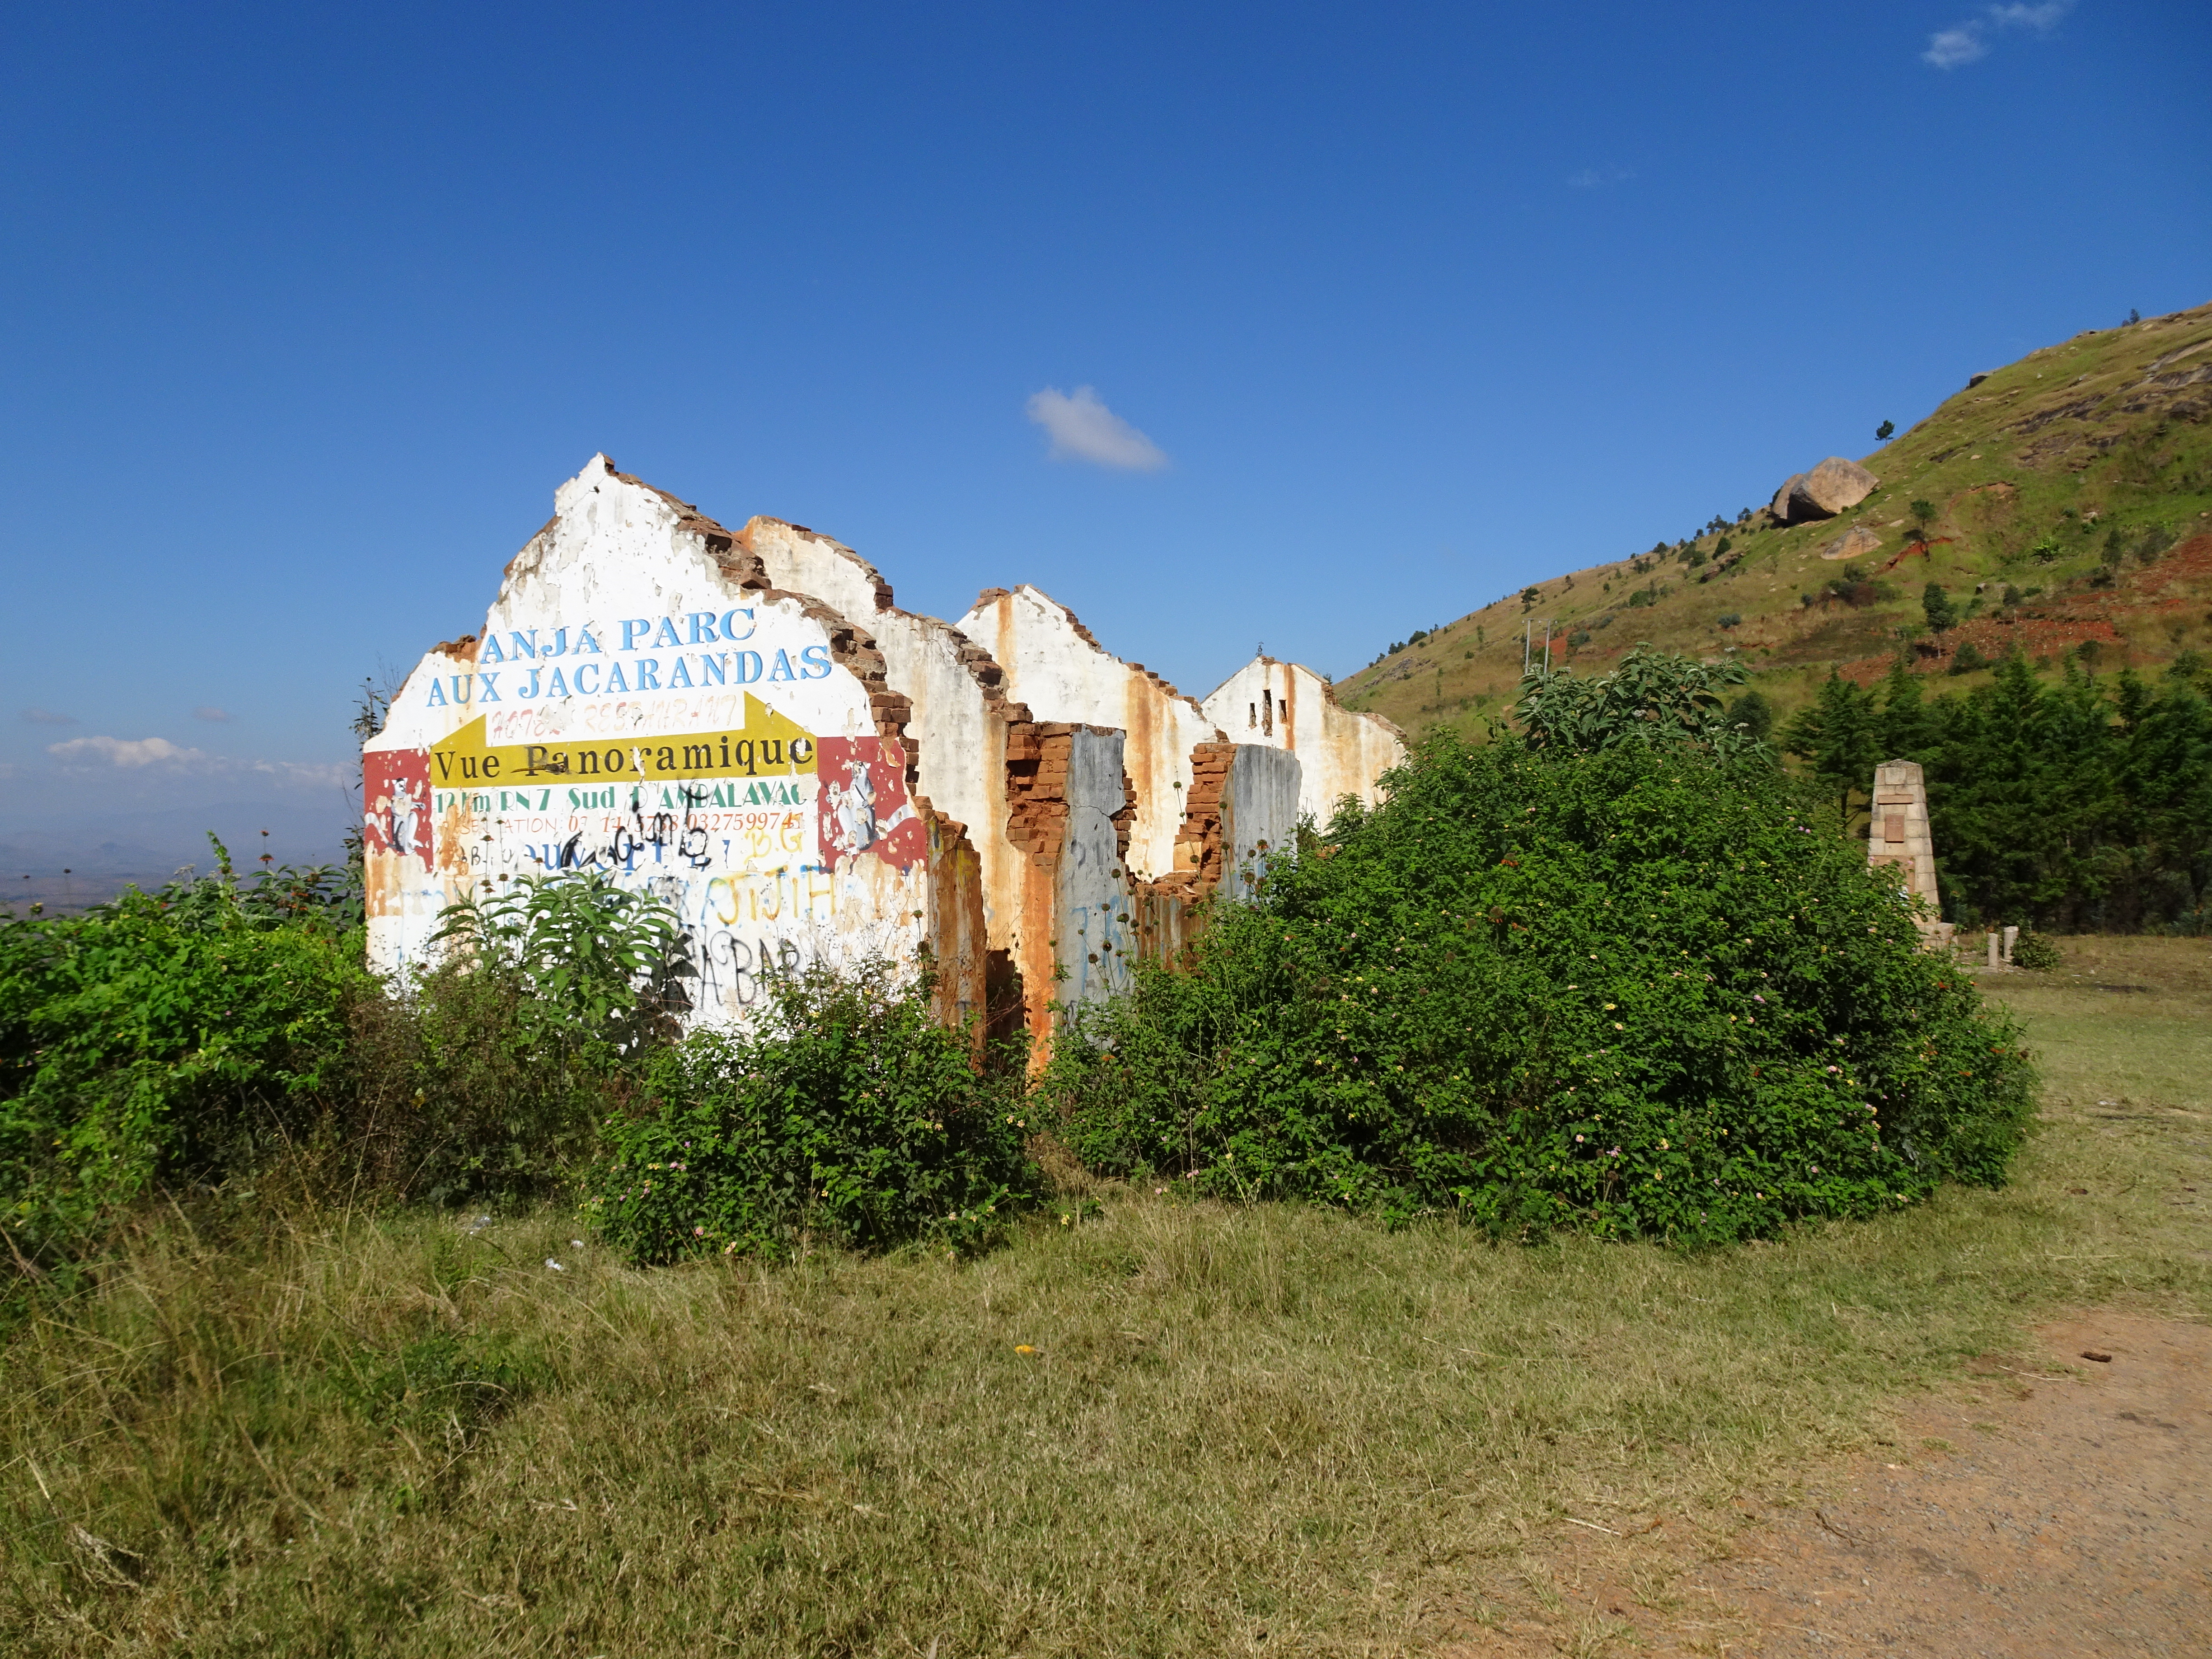 Anche spinto dalla fame, il banditismo in Madagascar è un fenomeno relativamente diffuso: questo albergo era stato incendiato da qualche anno da alcuni banditi della zona (Madagascar, 2018)